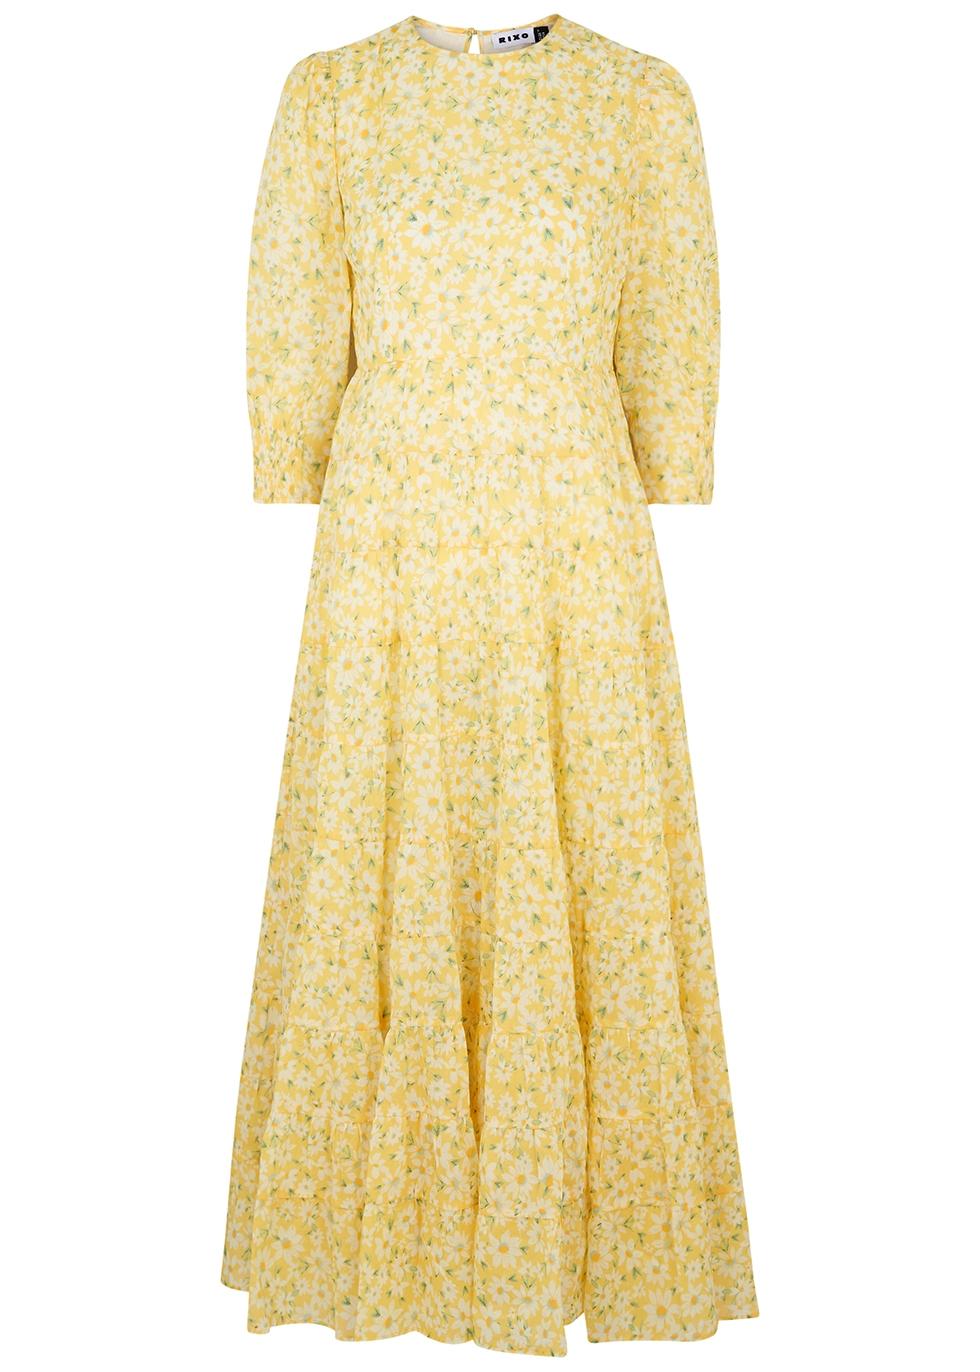 RIXO London Kristen Yellow Floral-print Cotton Dress | Lyst